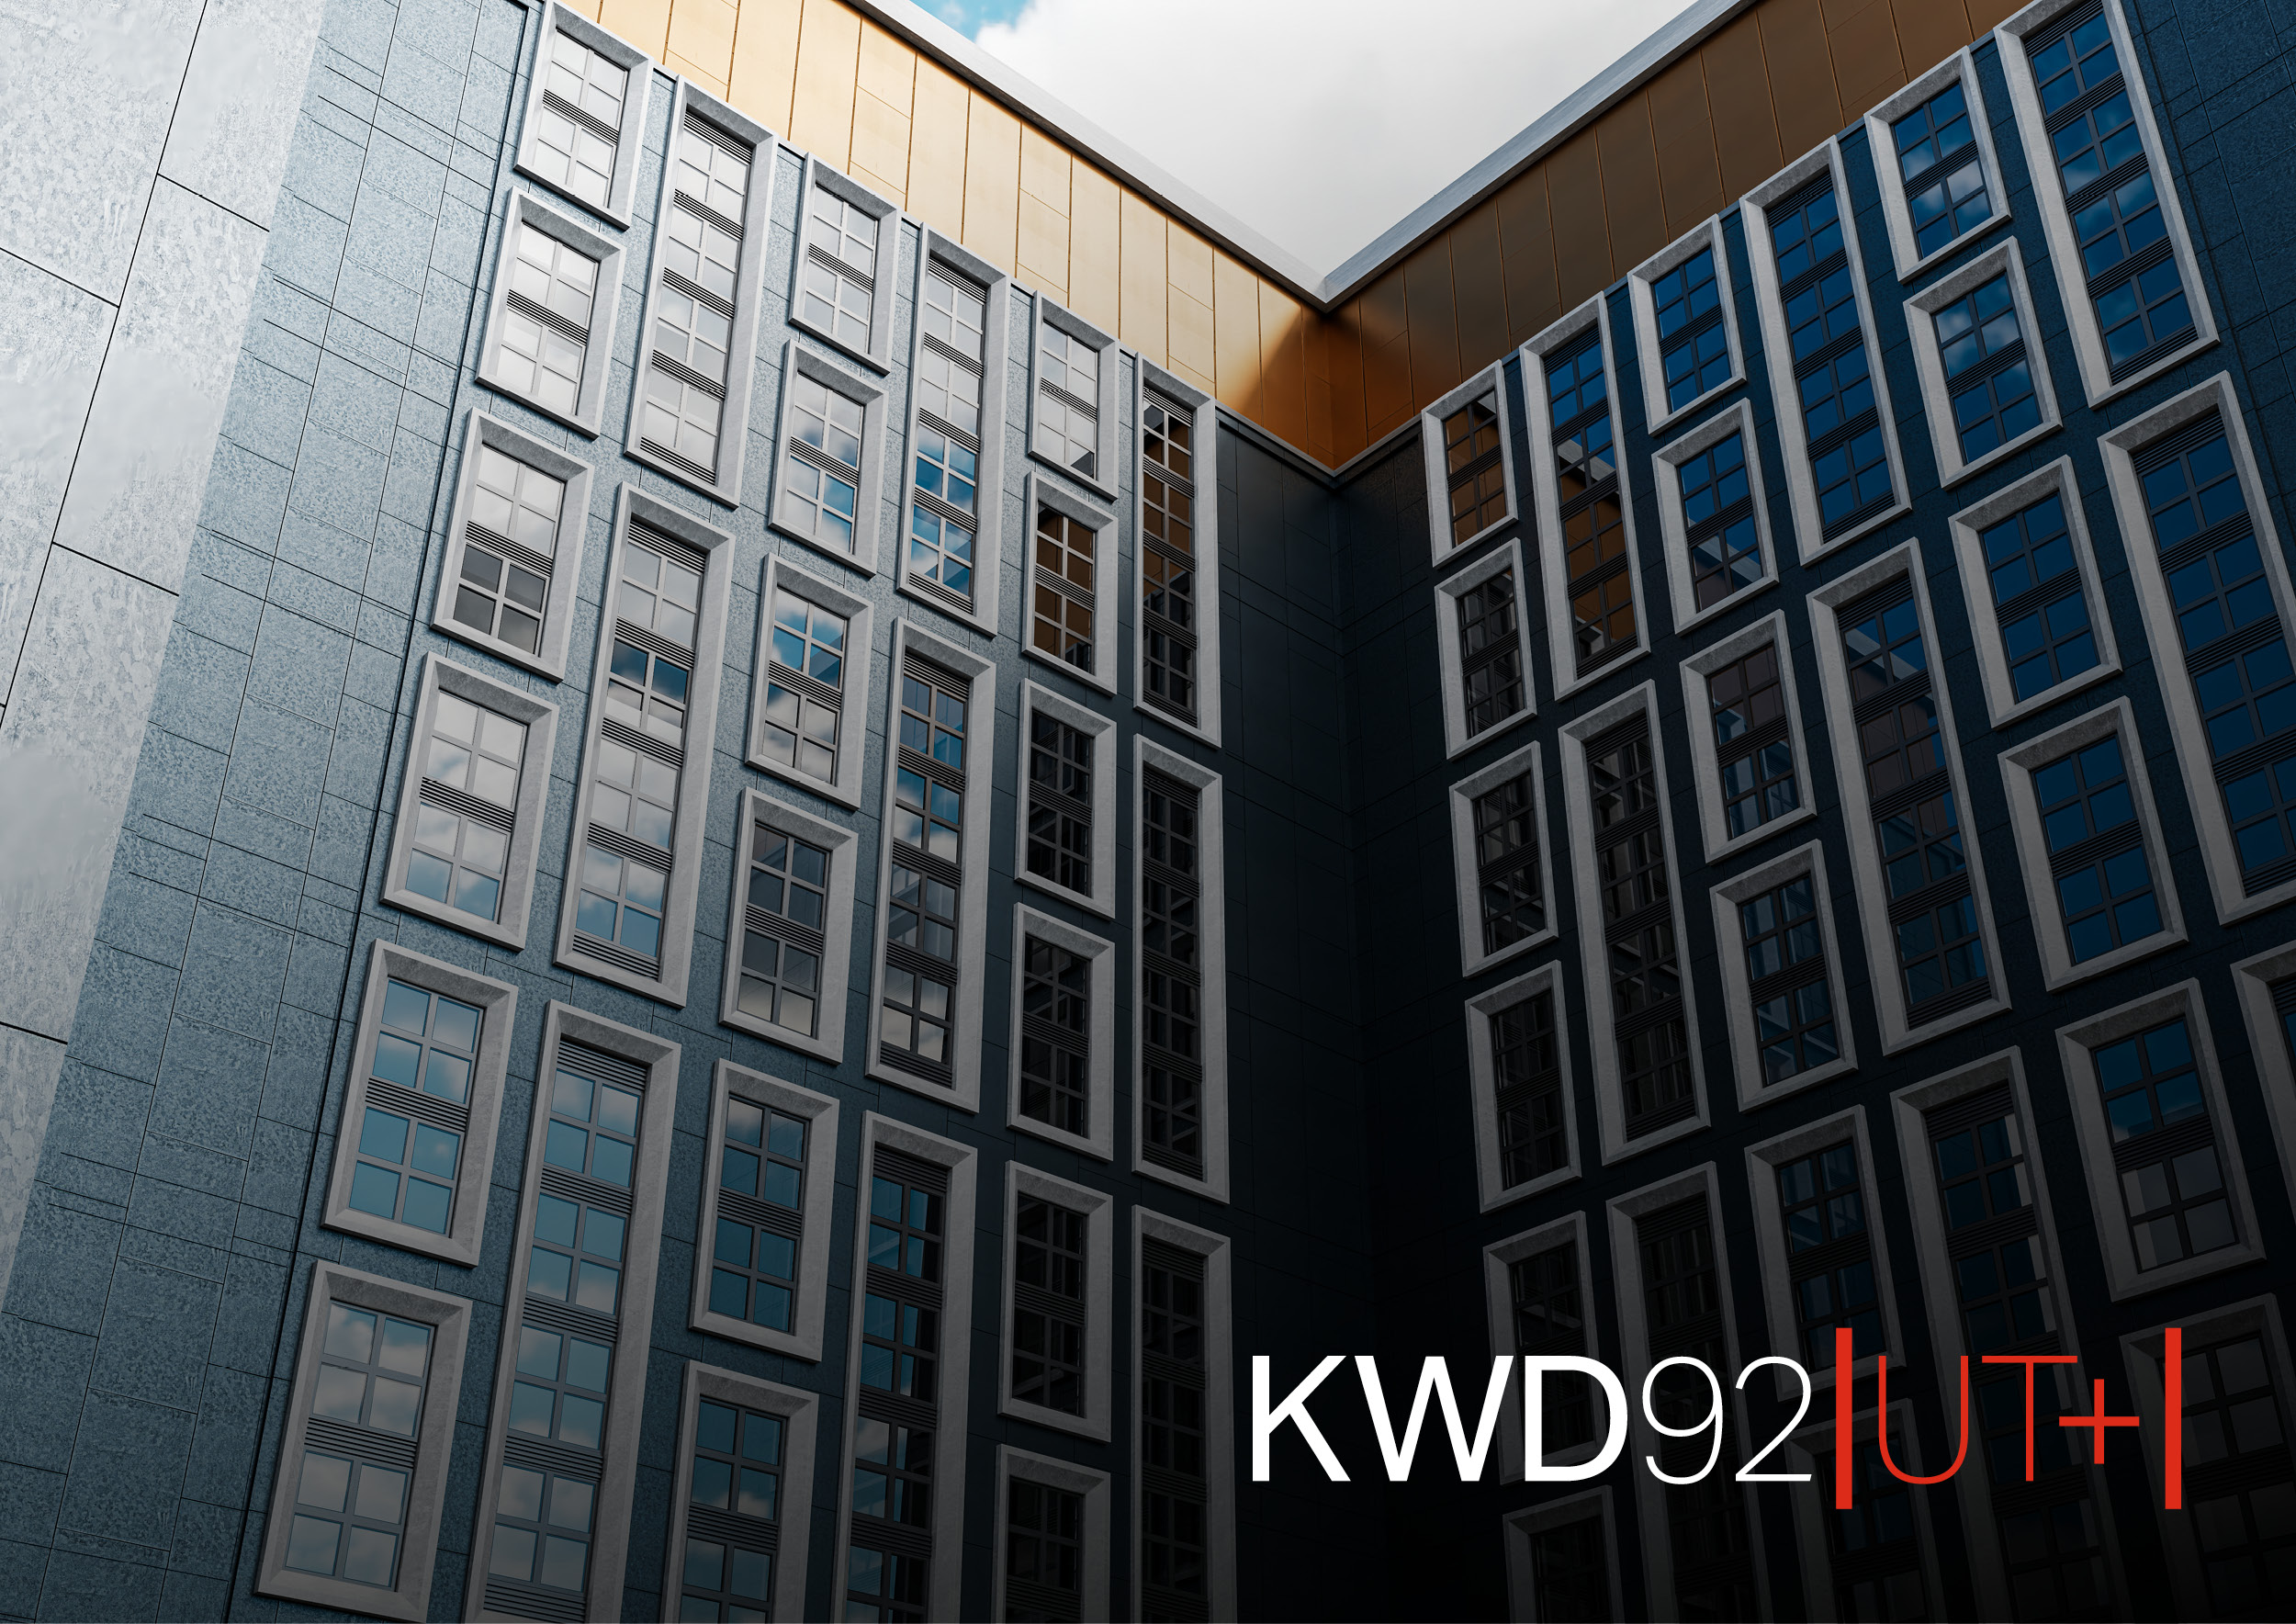 Kawneer’s KWD92 UT+ – Revolutionising Passive House Design